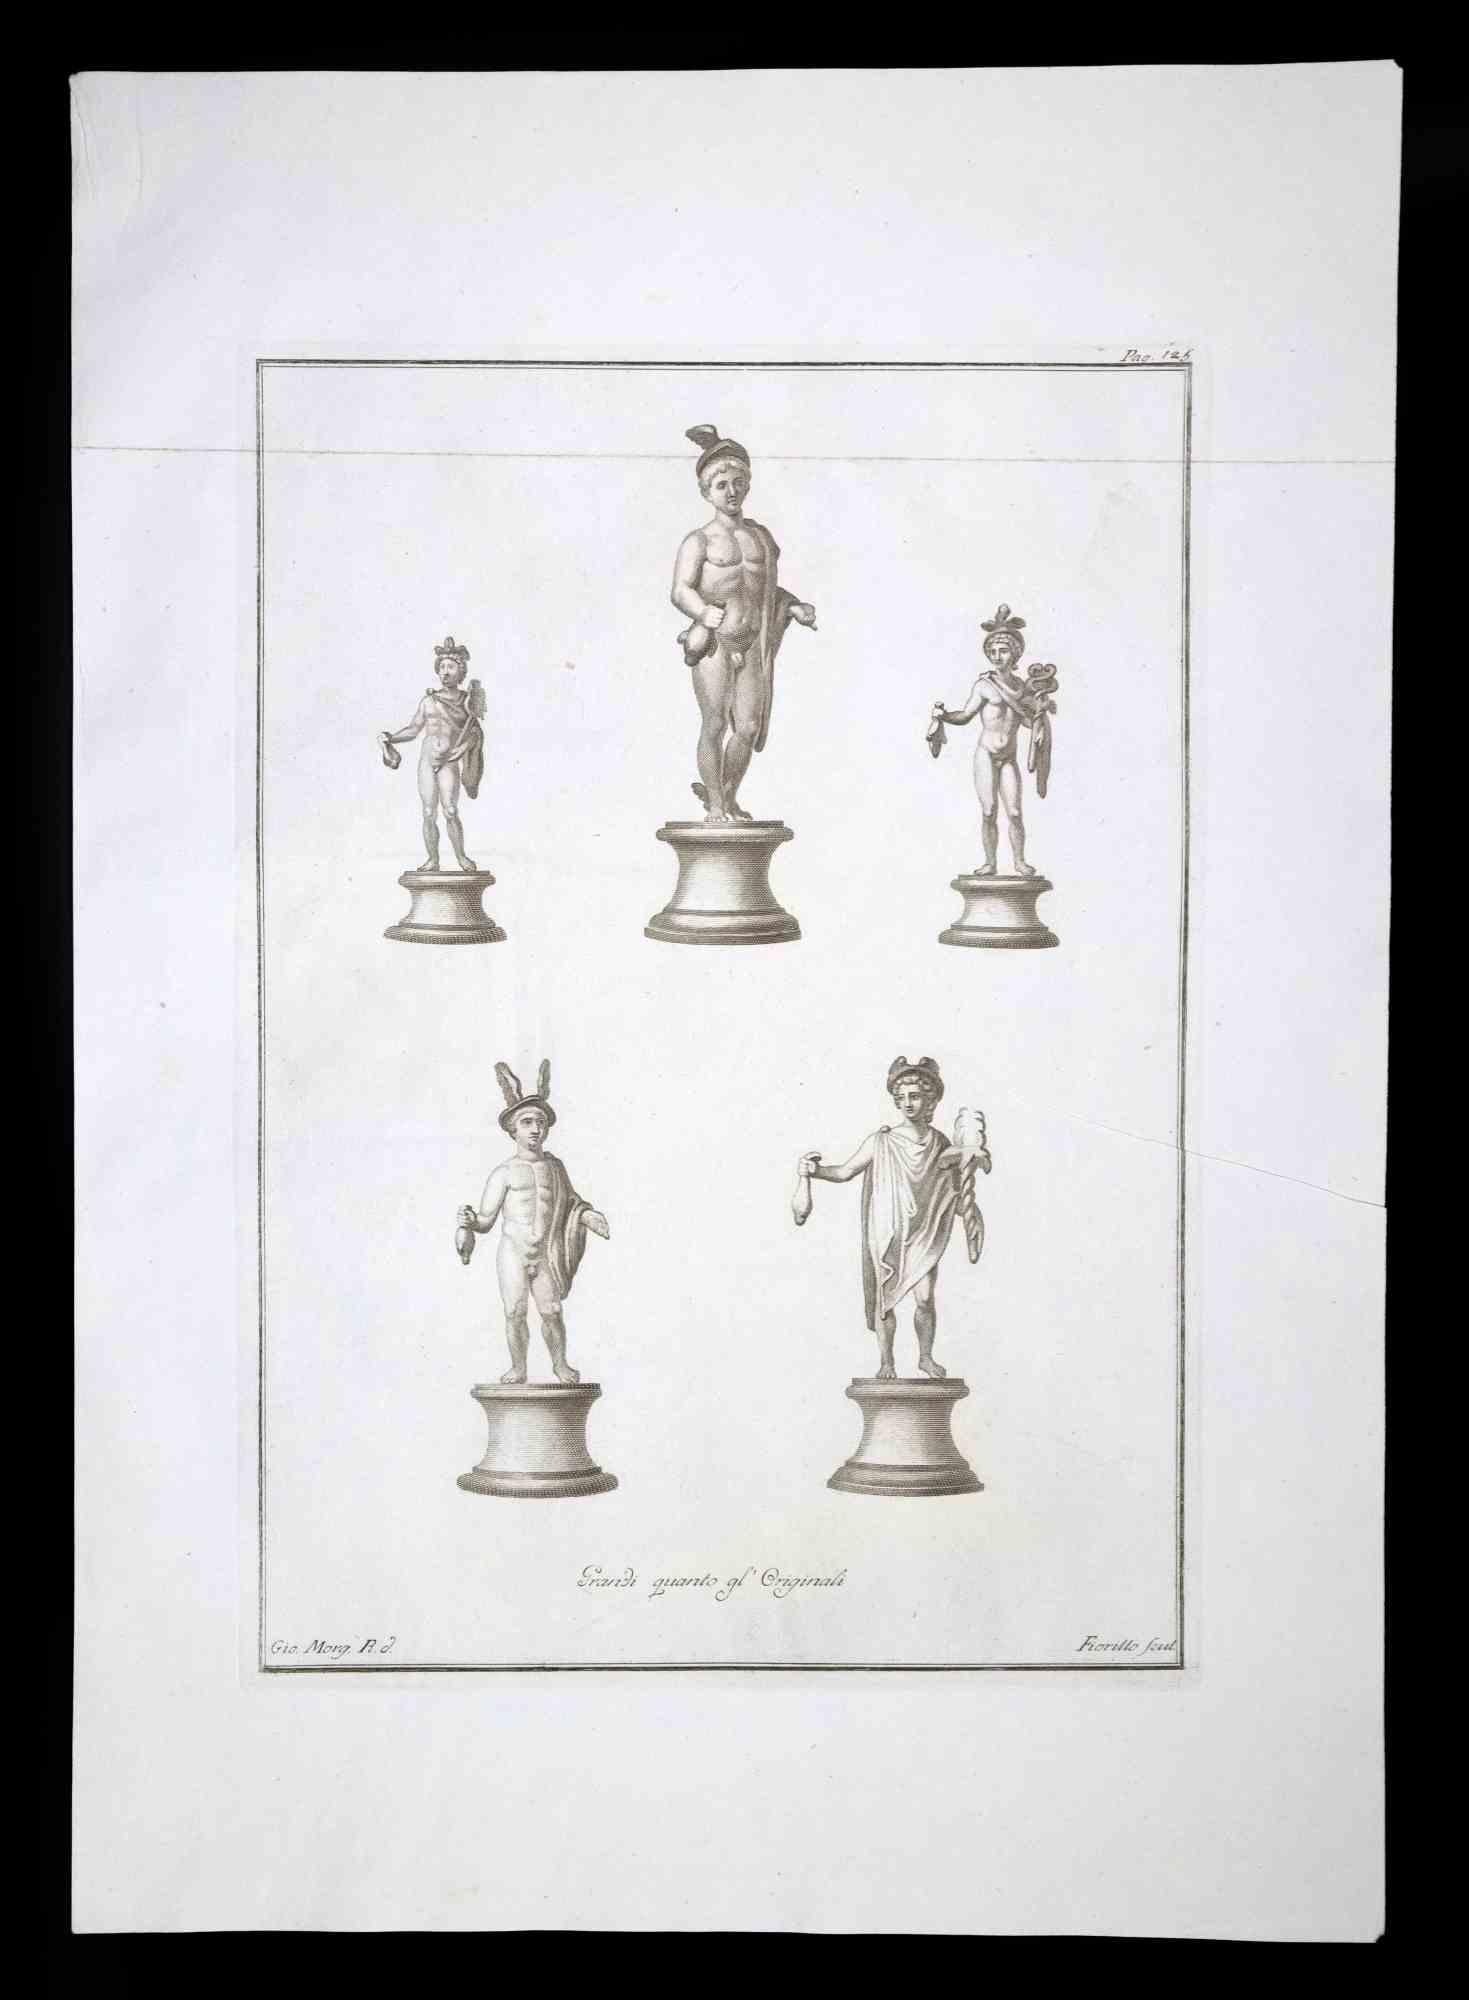 Hermes, antike römische Statue, aus der Serie "Antiquities of Herculaneum", ist eine Originalradierung auf Papier von Nicola Fiorillo aus dem 18.

Signiert auf der Platte, unten rechts.

Guter Zustand mit leichten Falten.

Die Radierung gehört zu